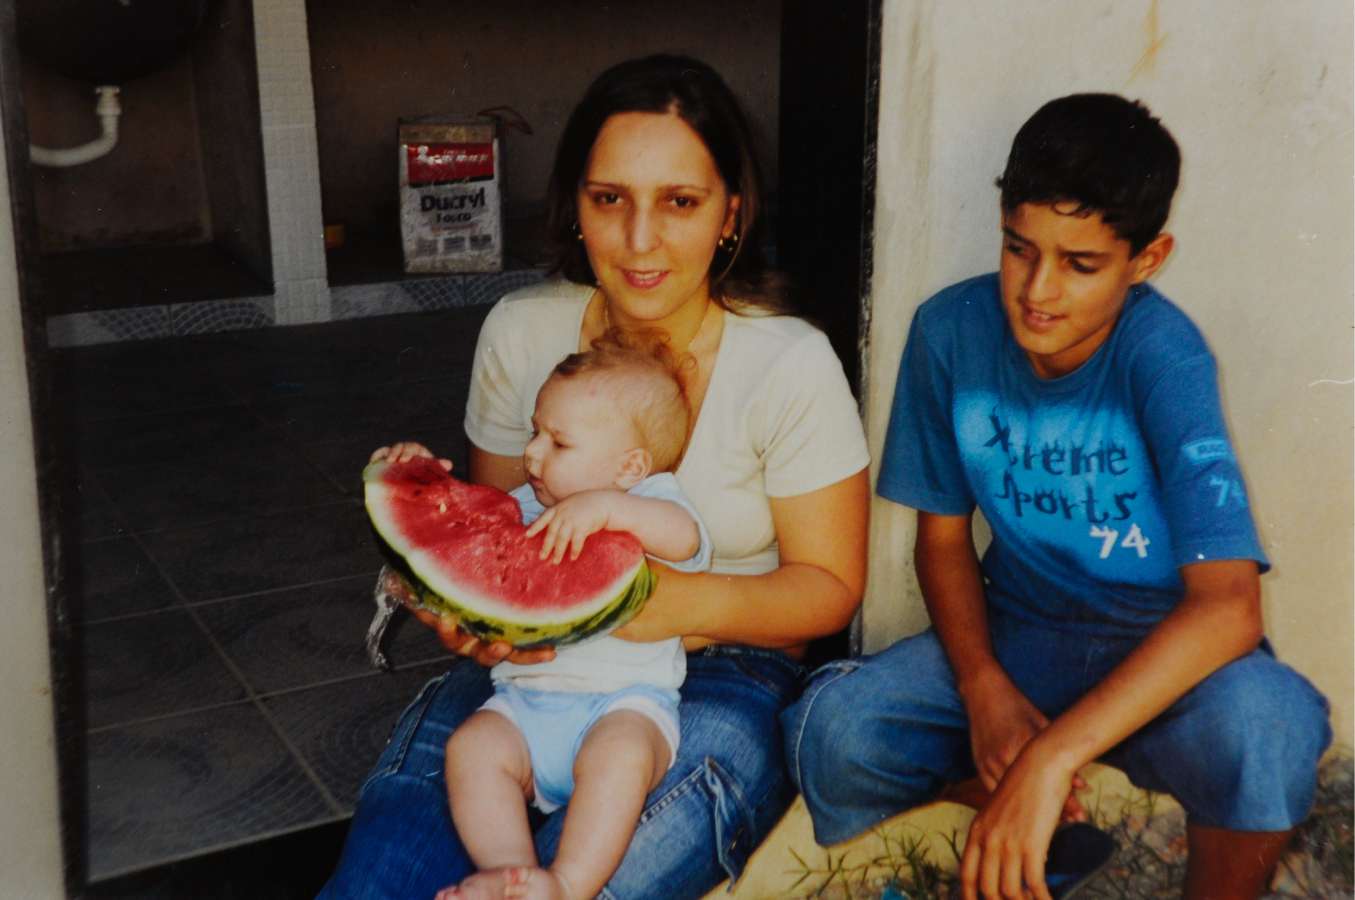  Reprodução da foto da esposa e dos filhos de Ronaldo Andrade, que os perdeu em um acidente na BR 101, provocado por um motorista embriagado. Crédito: Arquivo A Gazeta